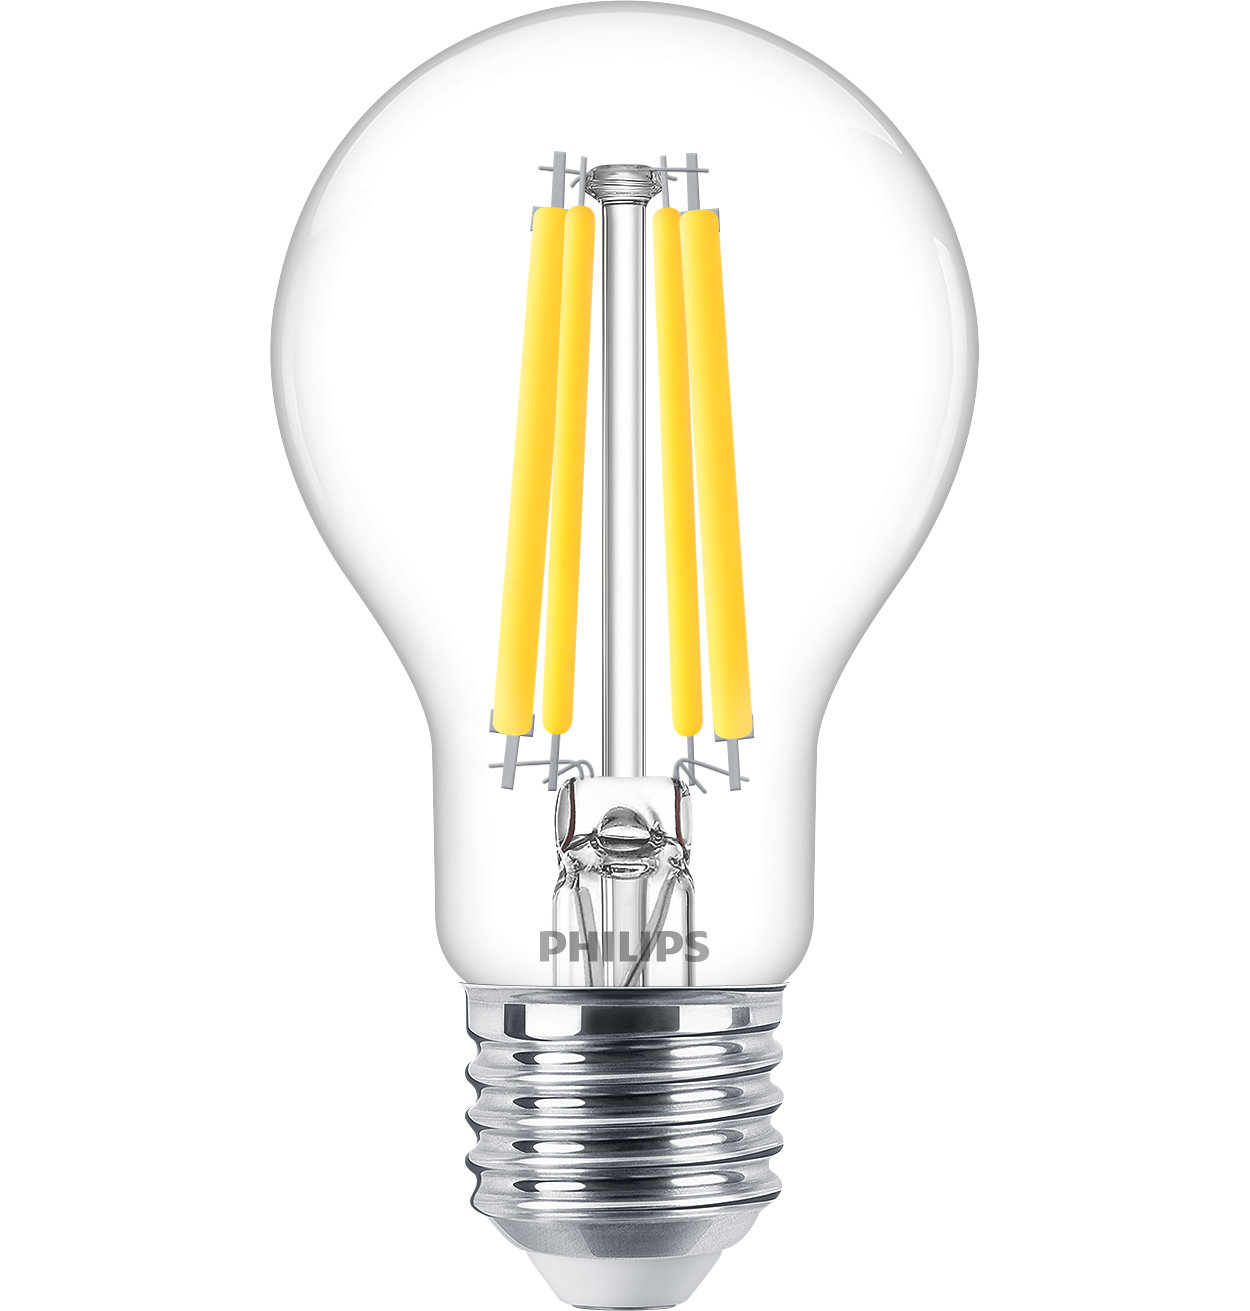 Dimbare LED-lyspærer i glass med mindre energiforbruk